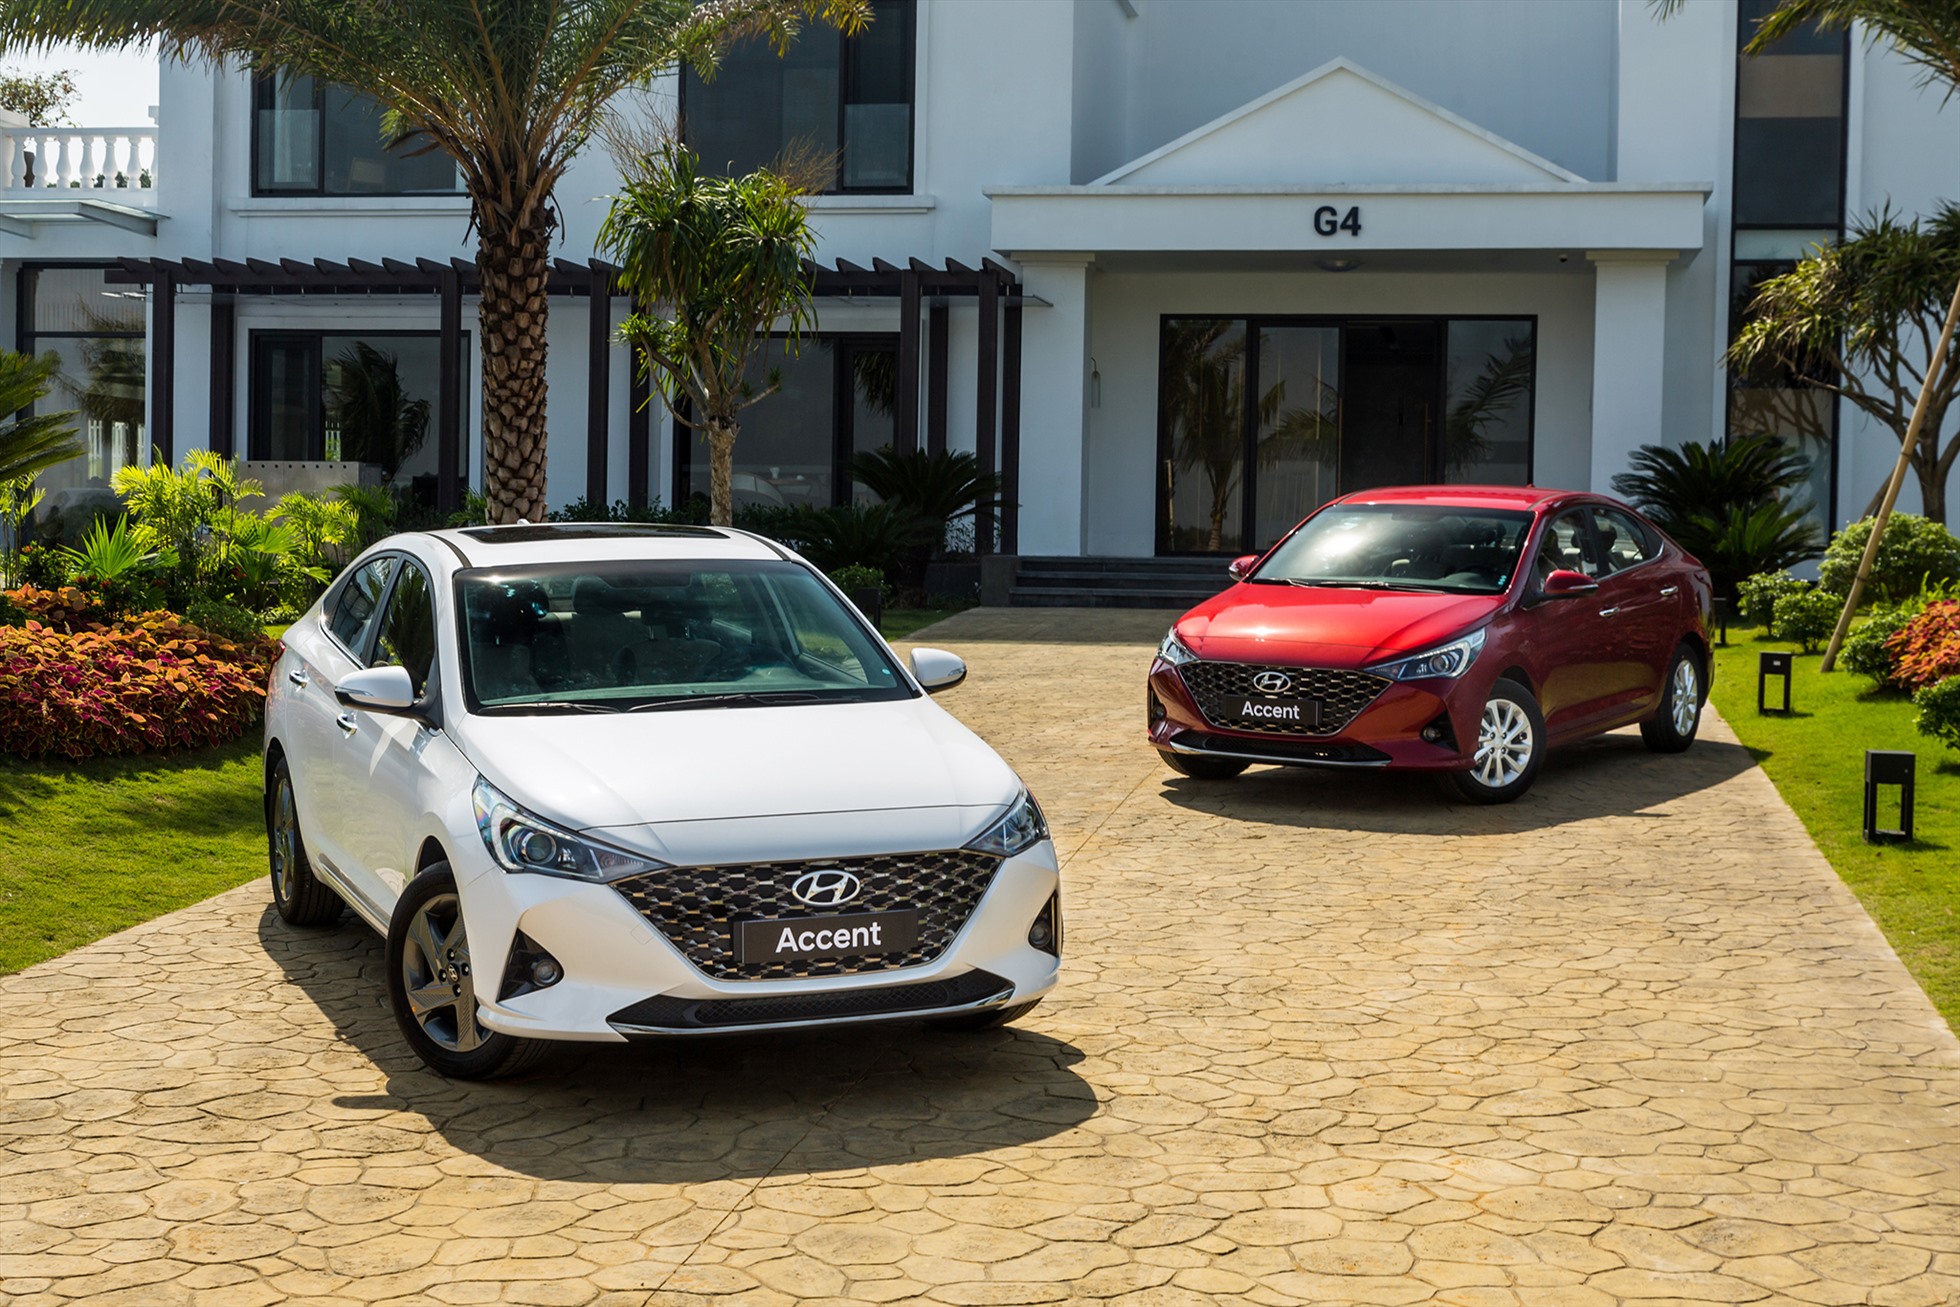 Hyundai Accent tiếp tục cho thấy sức bật cực kỳ mạnh mẽ của mình khi liên tiếp chiếm giữ ngôi vị quán quân trong bảng xếp hạng phân khúc, đồng thời dẫn đầu top 10 xe bán chạy nhất thị trường. Cụ thể, trong 2 tháng vừa qua, doanh số bán xe Hyundai Accent đạt 2.588 chiếc. Hyundai Accent không chỉ giữ vị trí bán chạy nhất phân khúc sedan hạng B, mà còn là mẫu xe bán chạy nhất toàn thị trường trong 2 tháng đầu năm 2023, vượt lên trên đối thủ nặng ký Toyota Vios - cựu vương năm 2022. Ảnh: TC Motor.